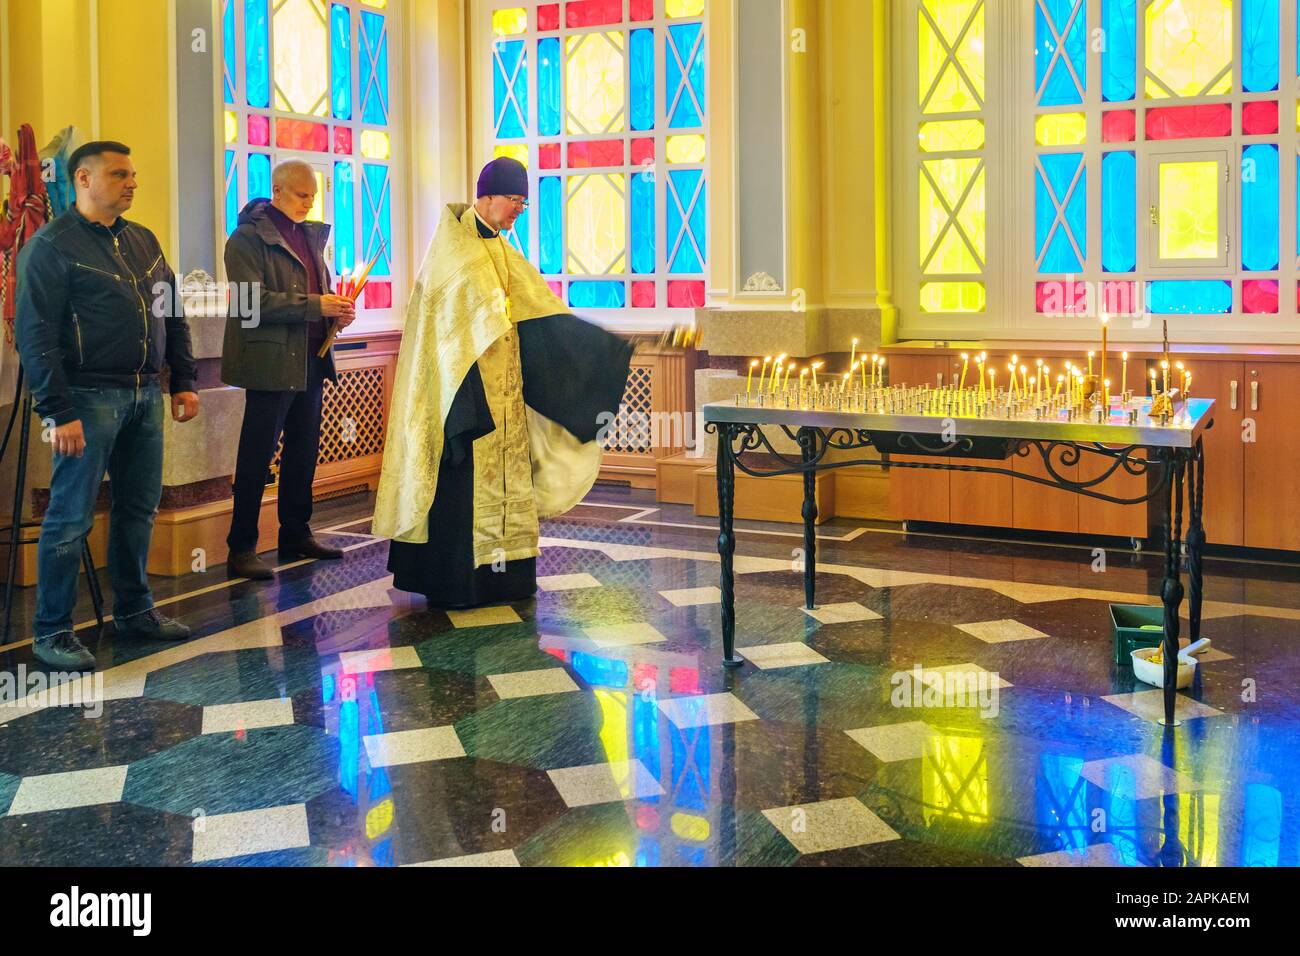 Der orthodoxe Priester kondensiert mit Thurible in der Wahrzeichen der Kathedrale von Himmelfahrt alias Zenkov in Almaty Kasachstan Stockfoto